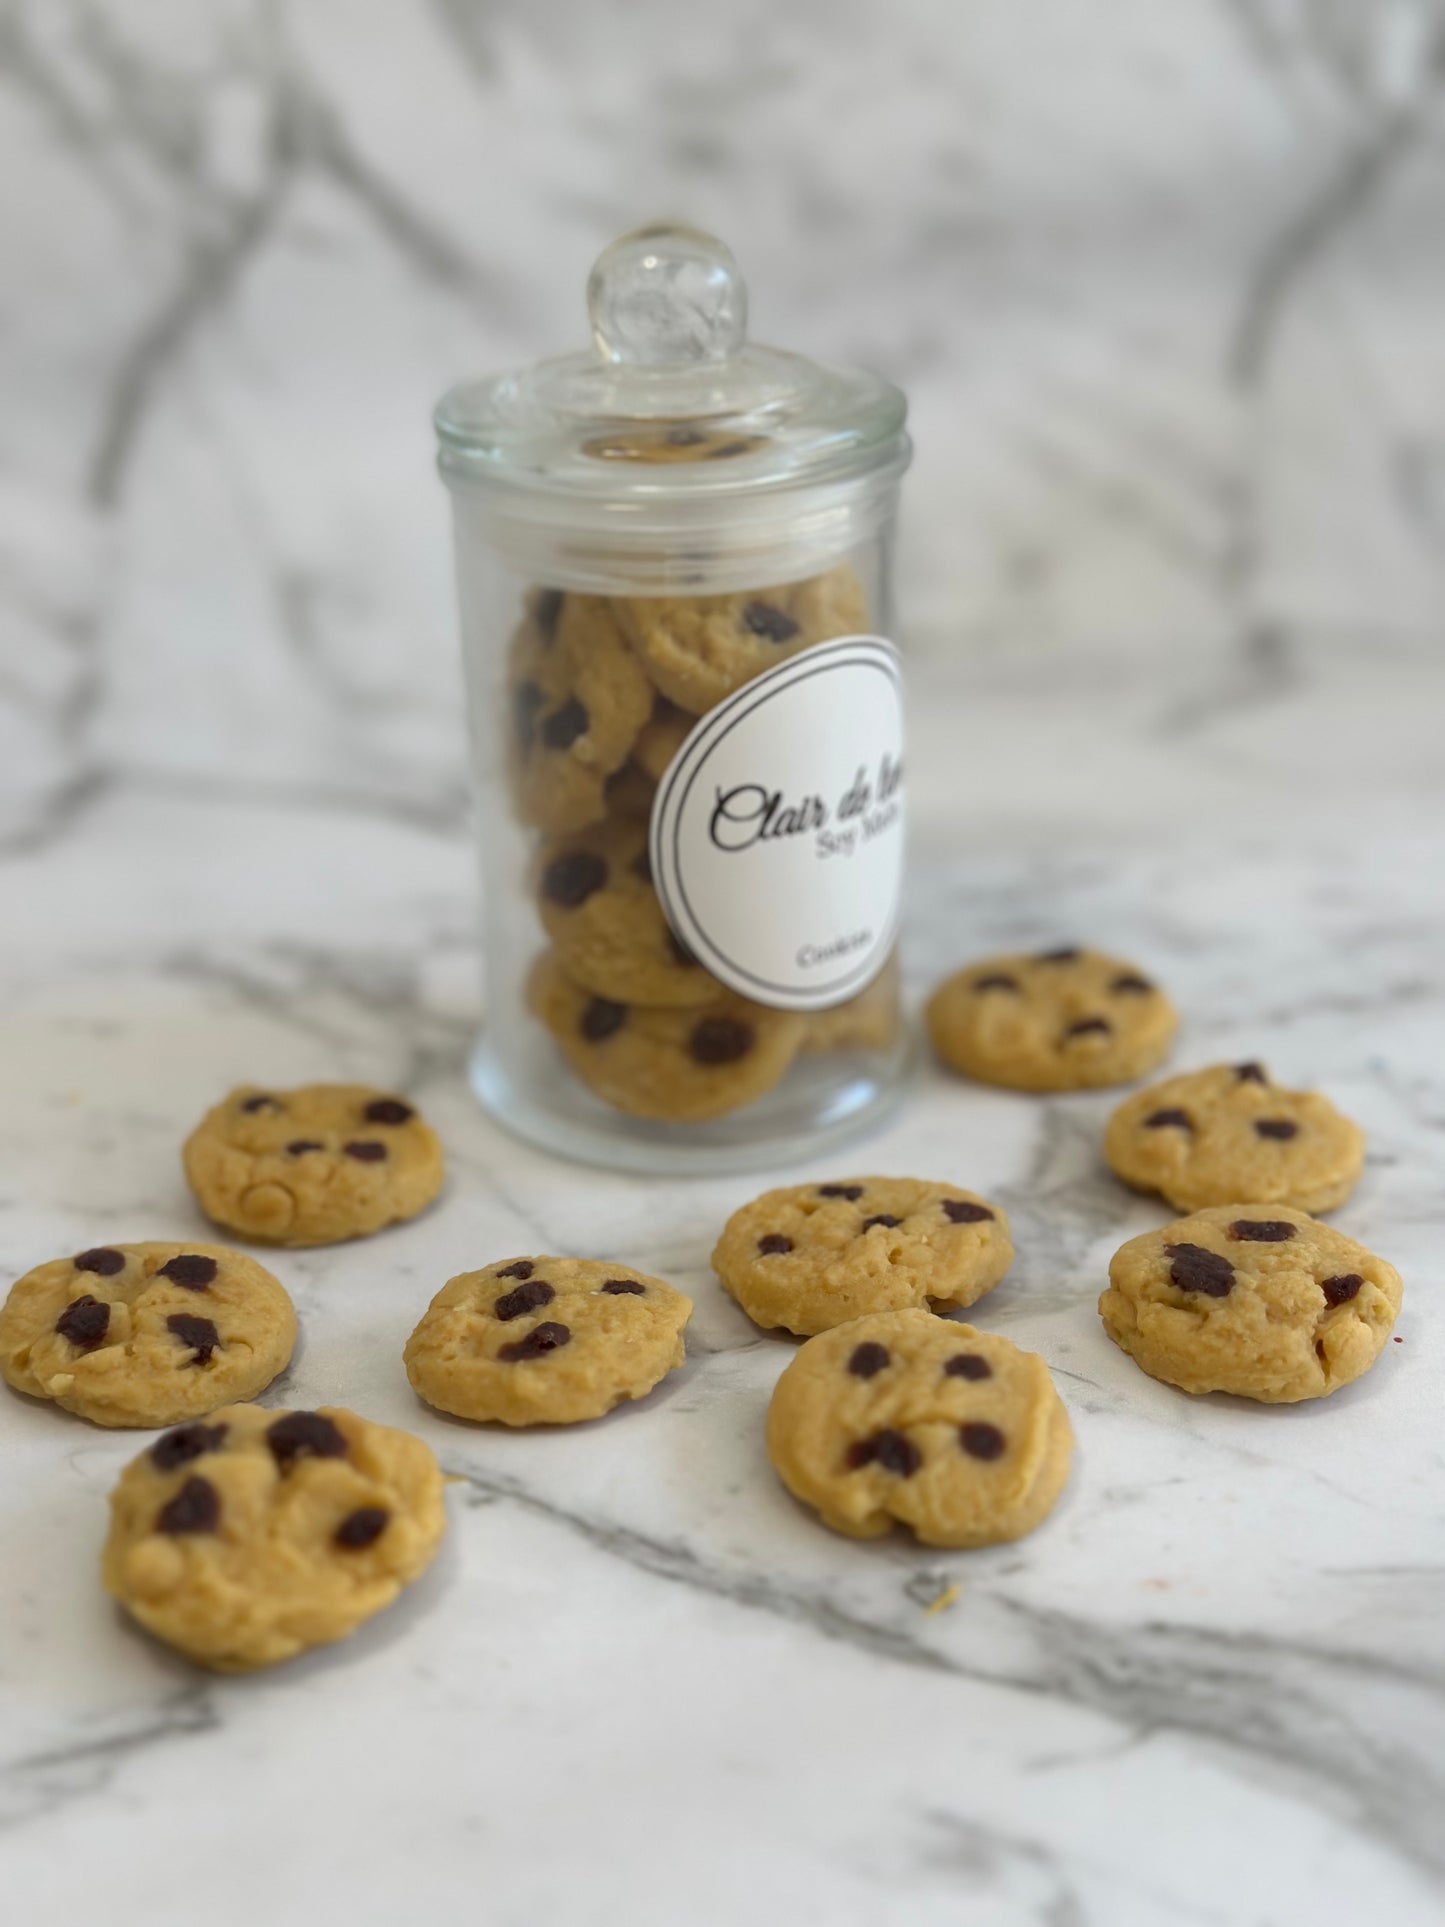 Melt jar - Cookies